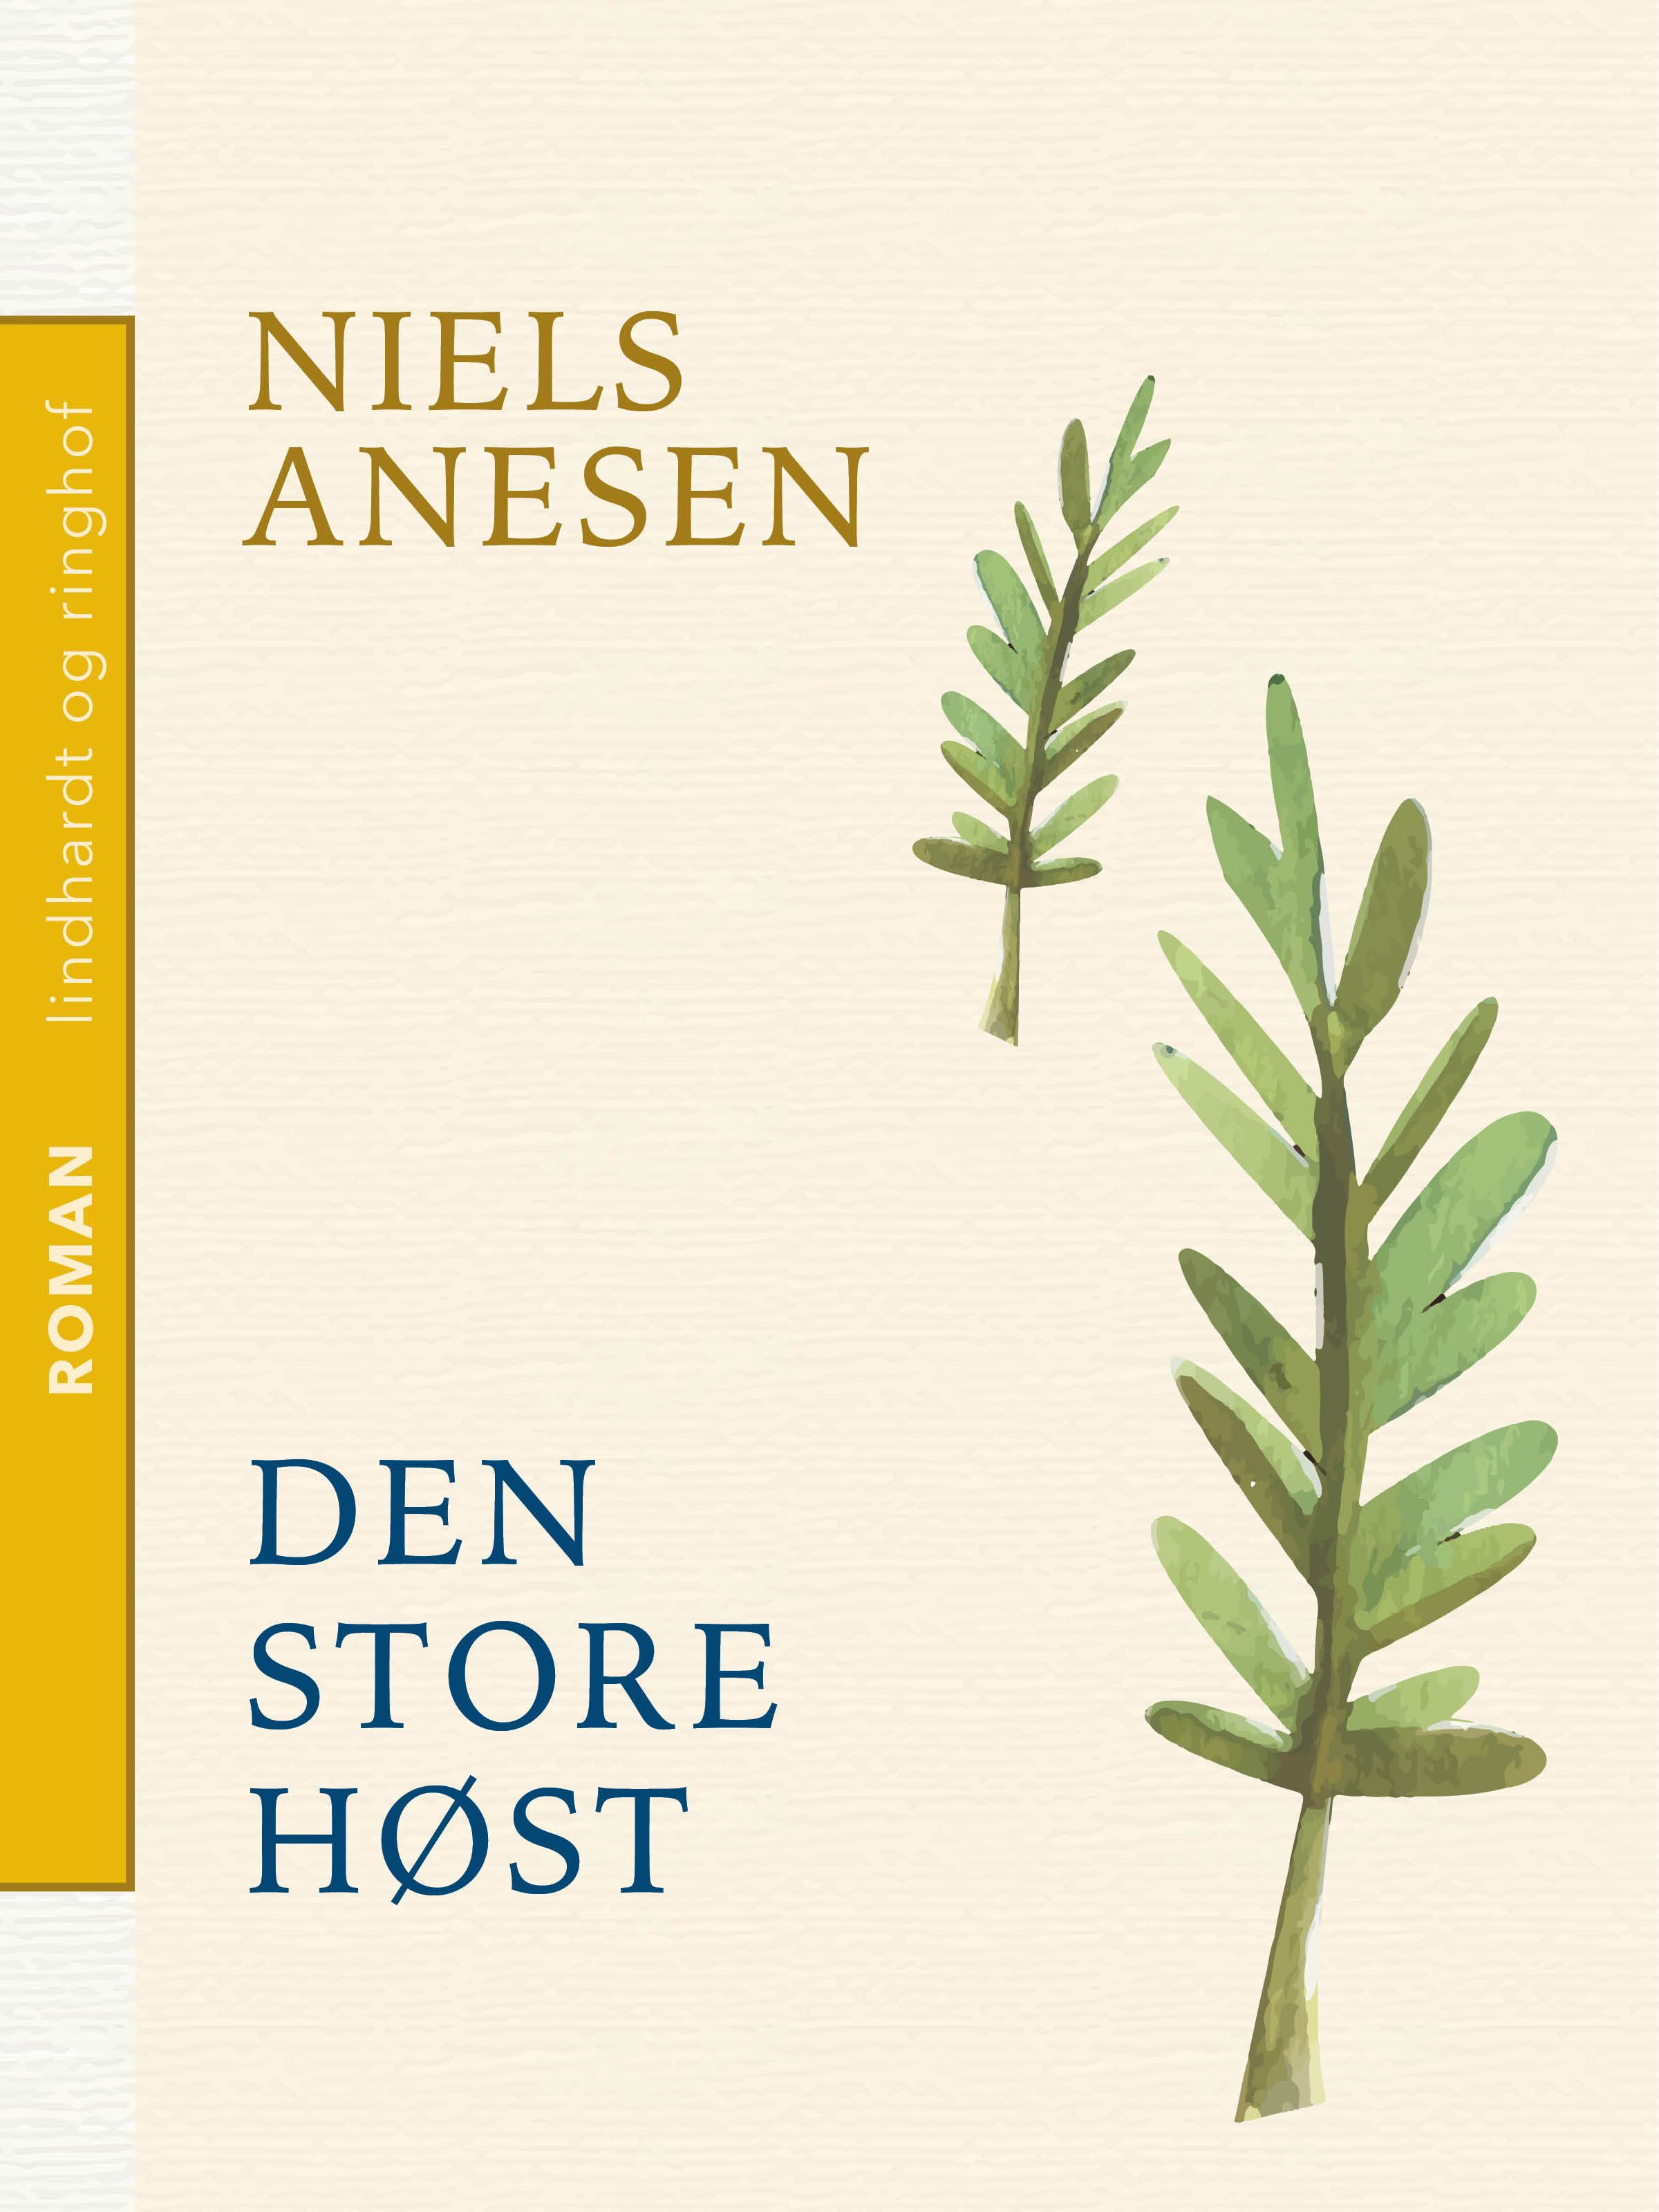 Den store høst, e-bok av Niels Anesen